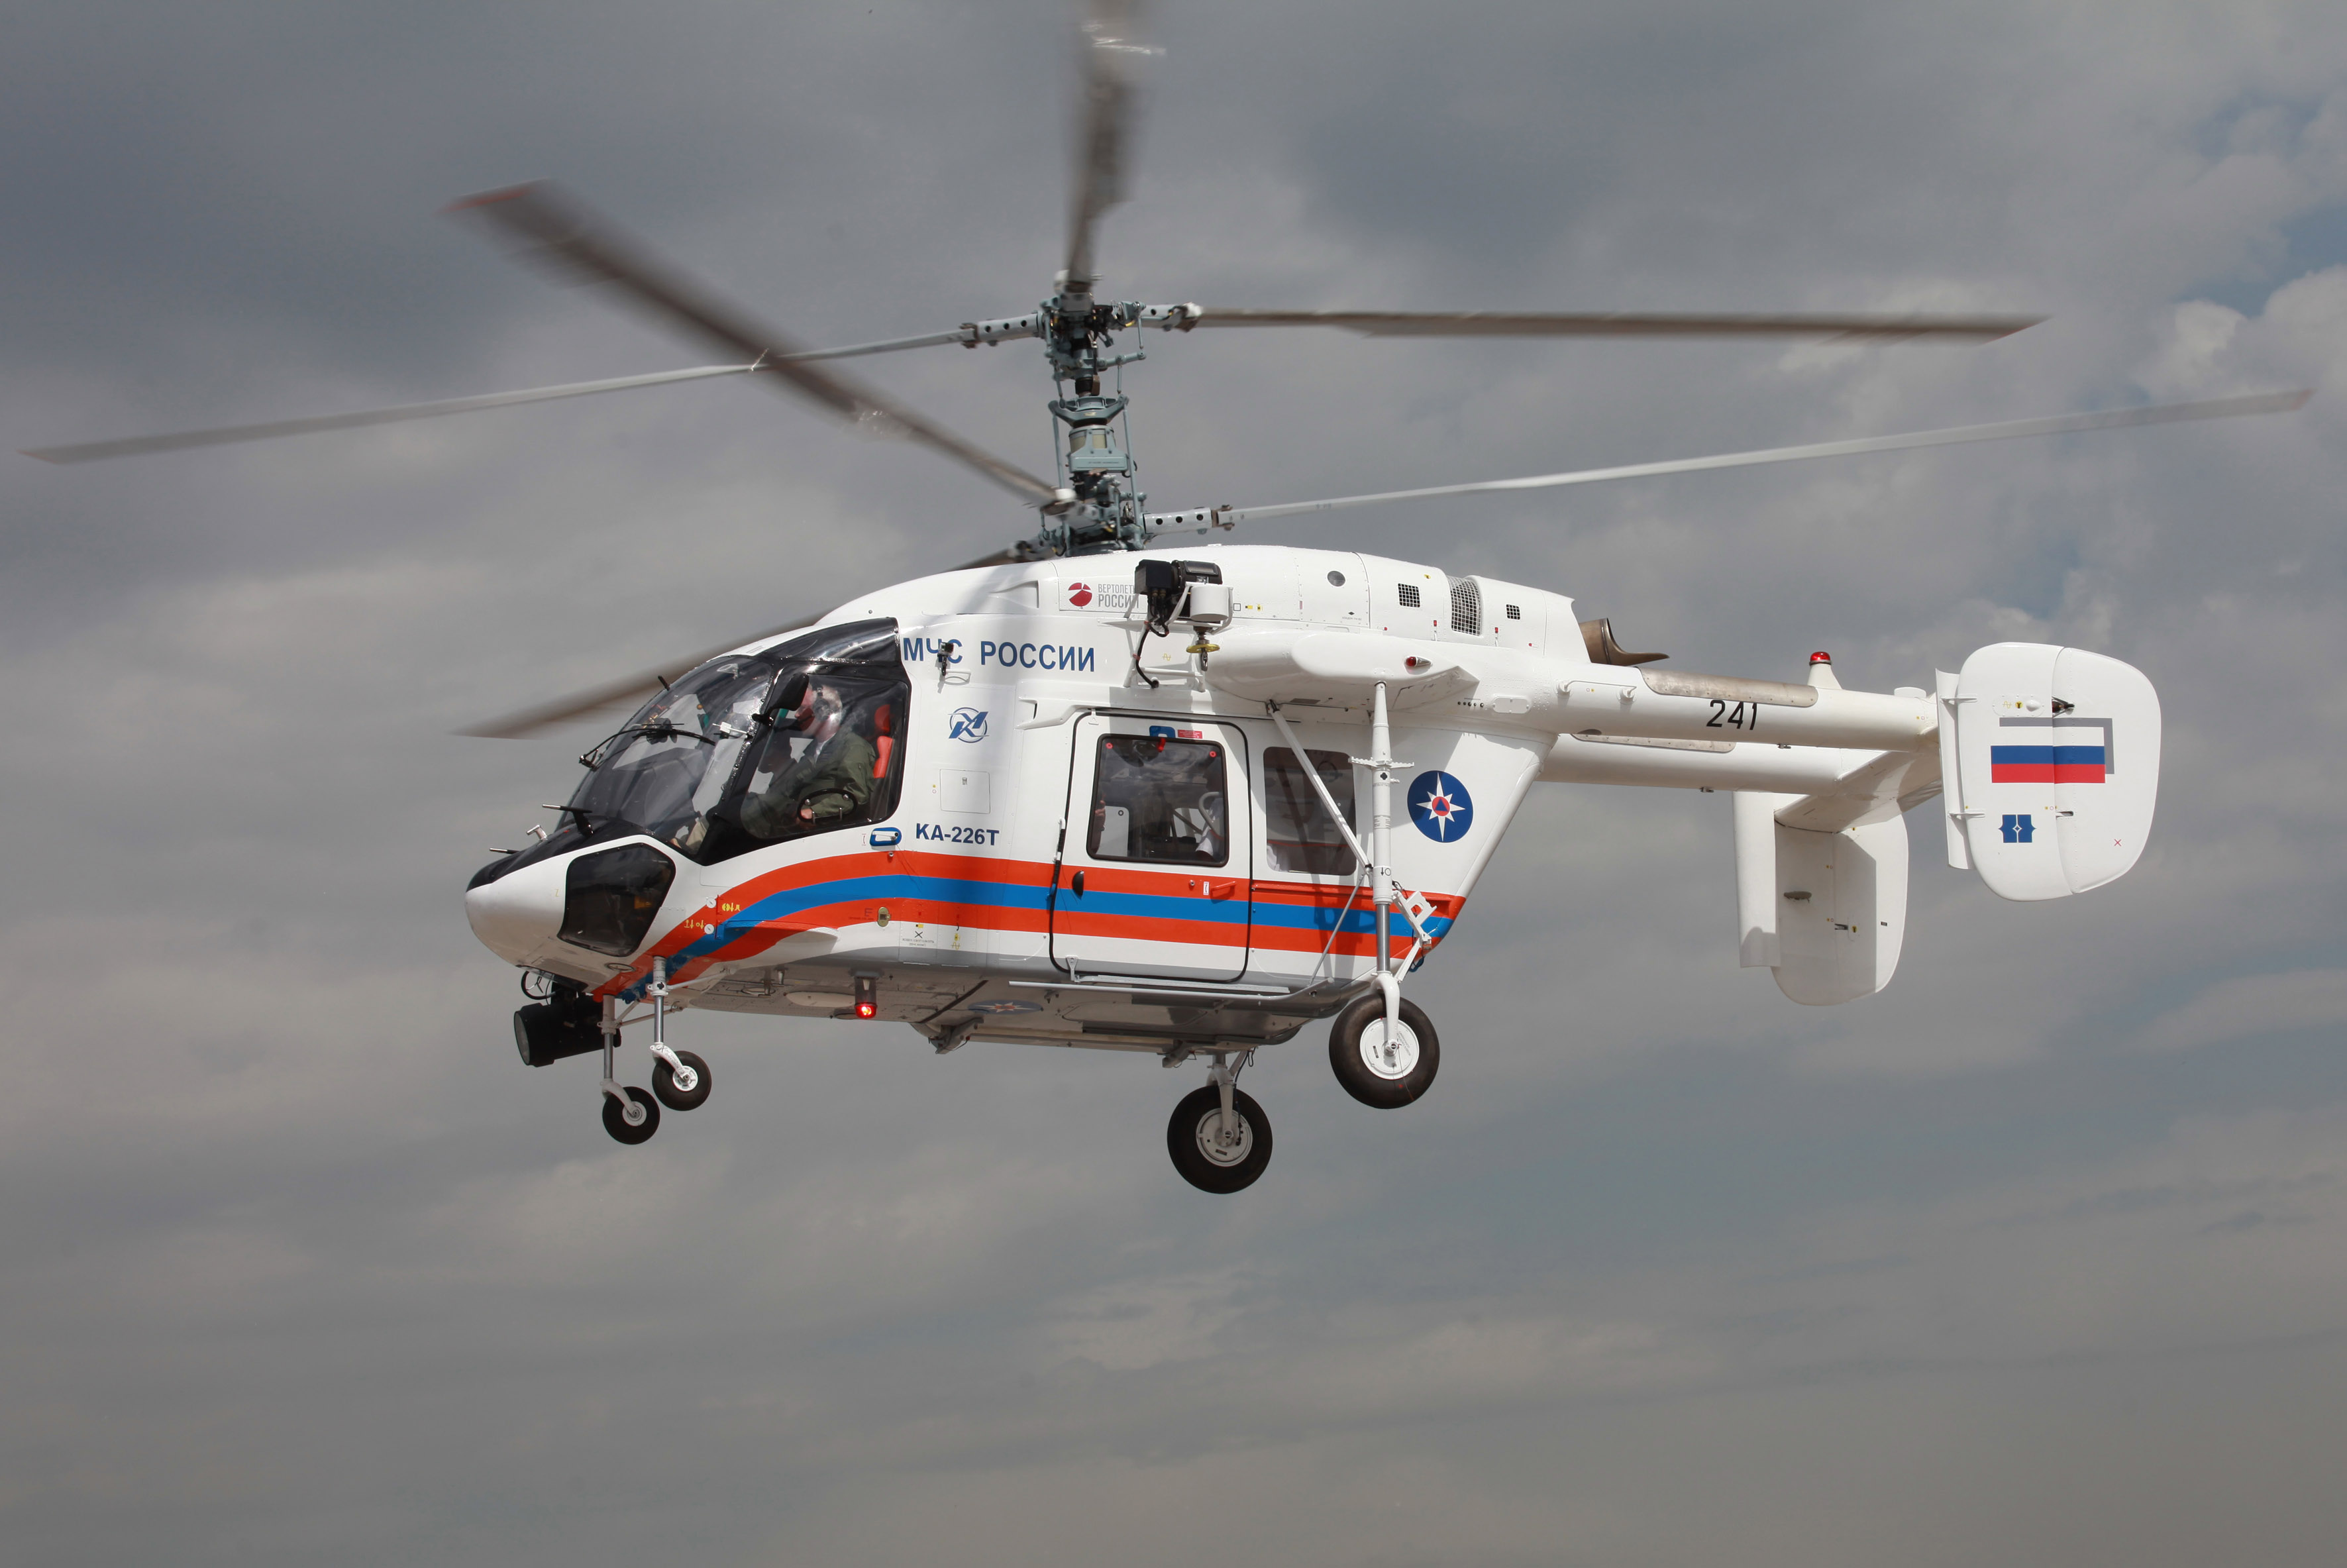 轻型多用途直升机卡-226Т